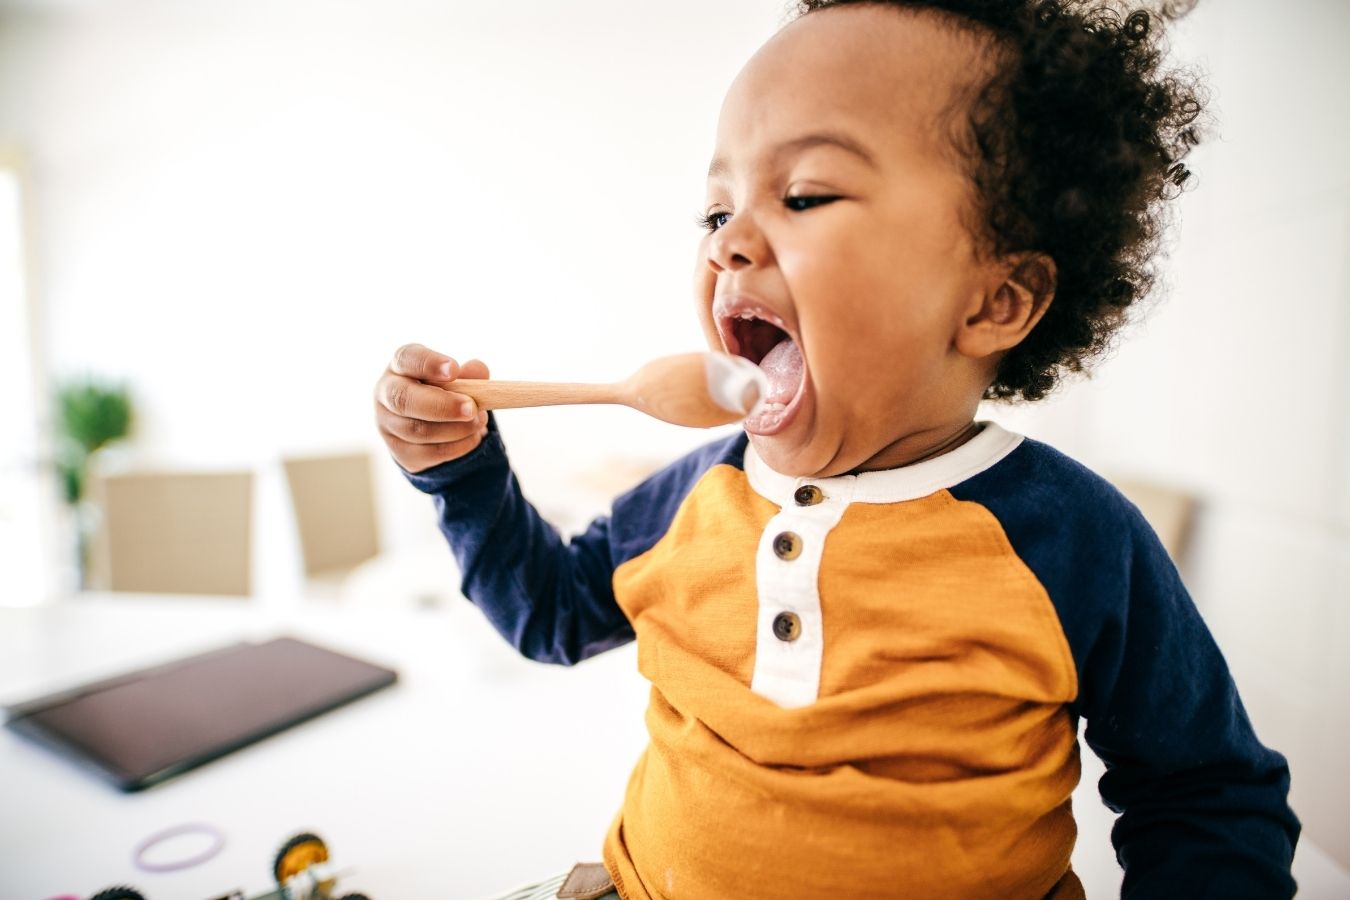 Baby Training Spoon Children Learn To Eat Feeding Utensil Toddler